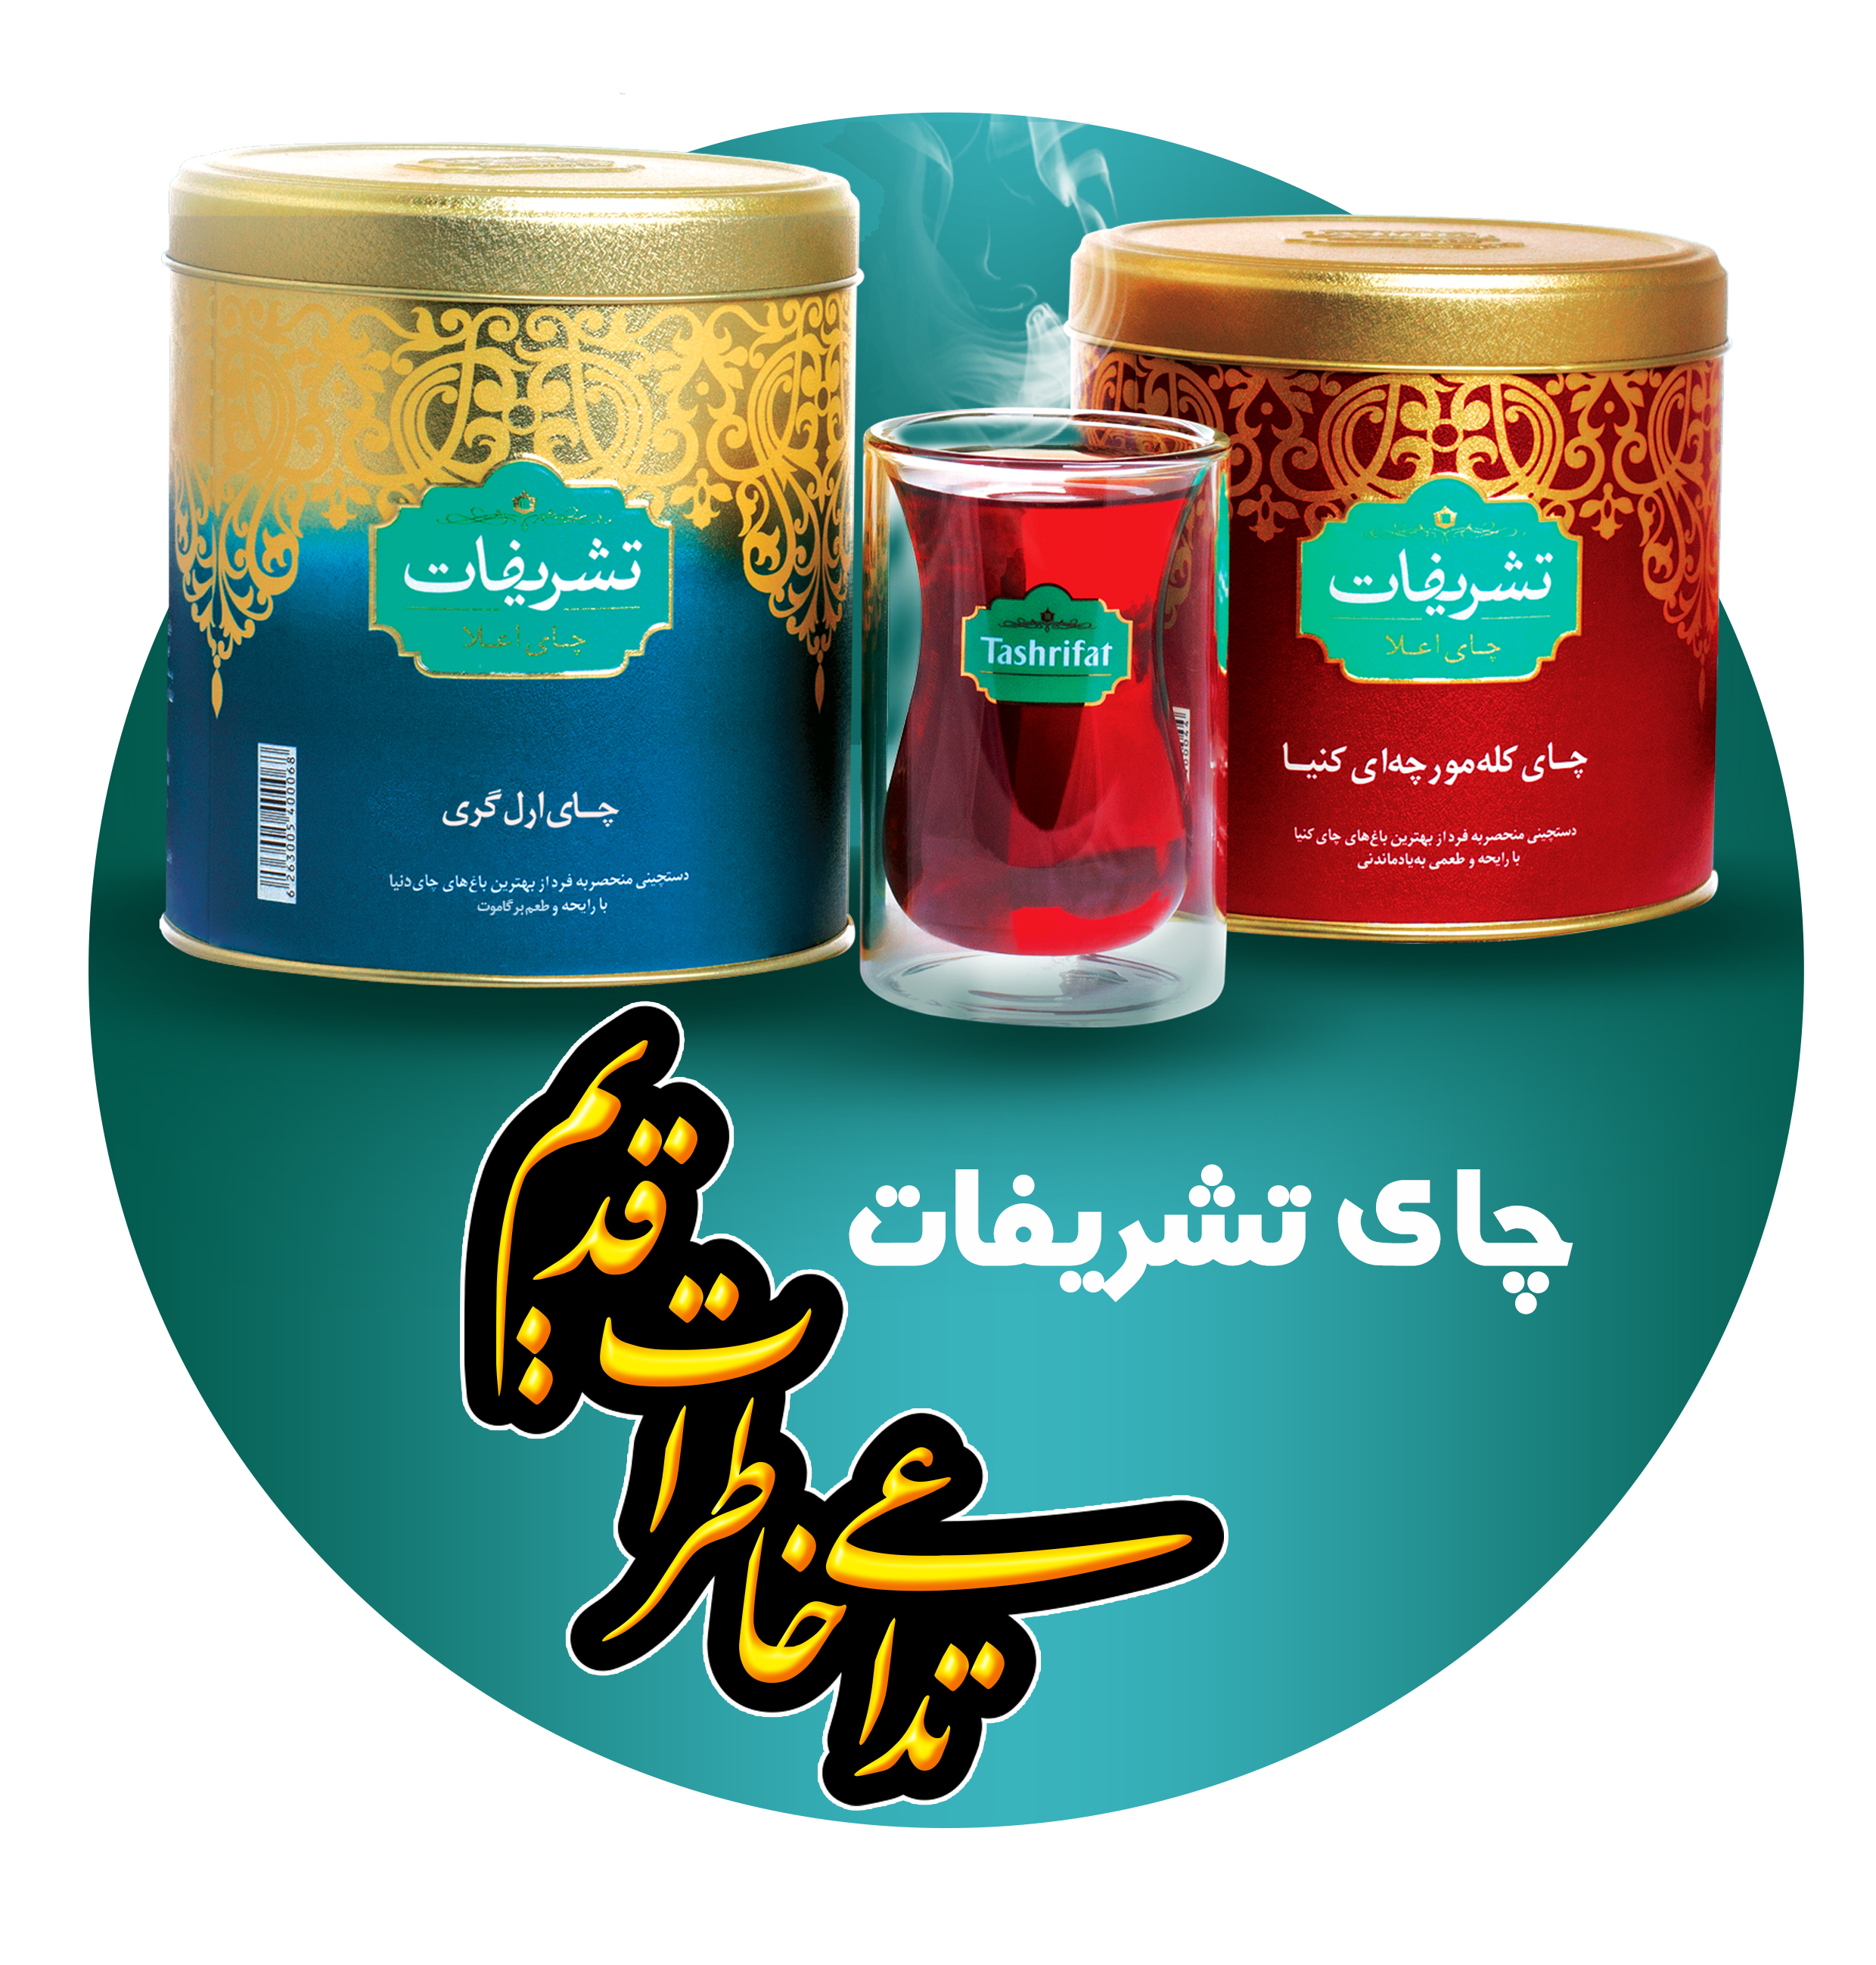 حضور آقای شهاب عضدی مدیر فروش کل کشور شرکت طلا چای ( چای تشریفات) در پخش بهپارس